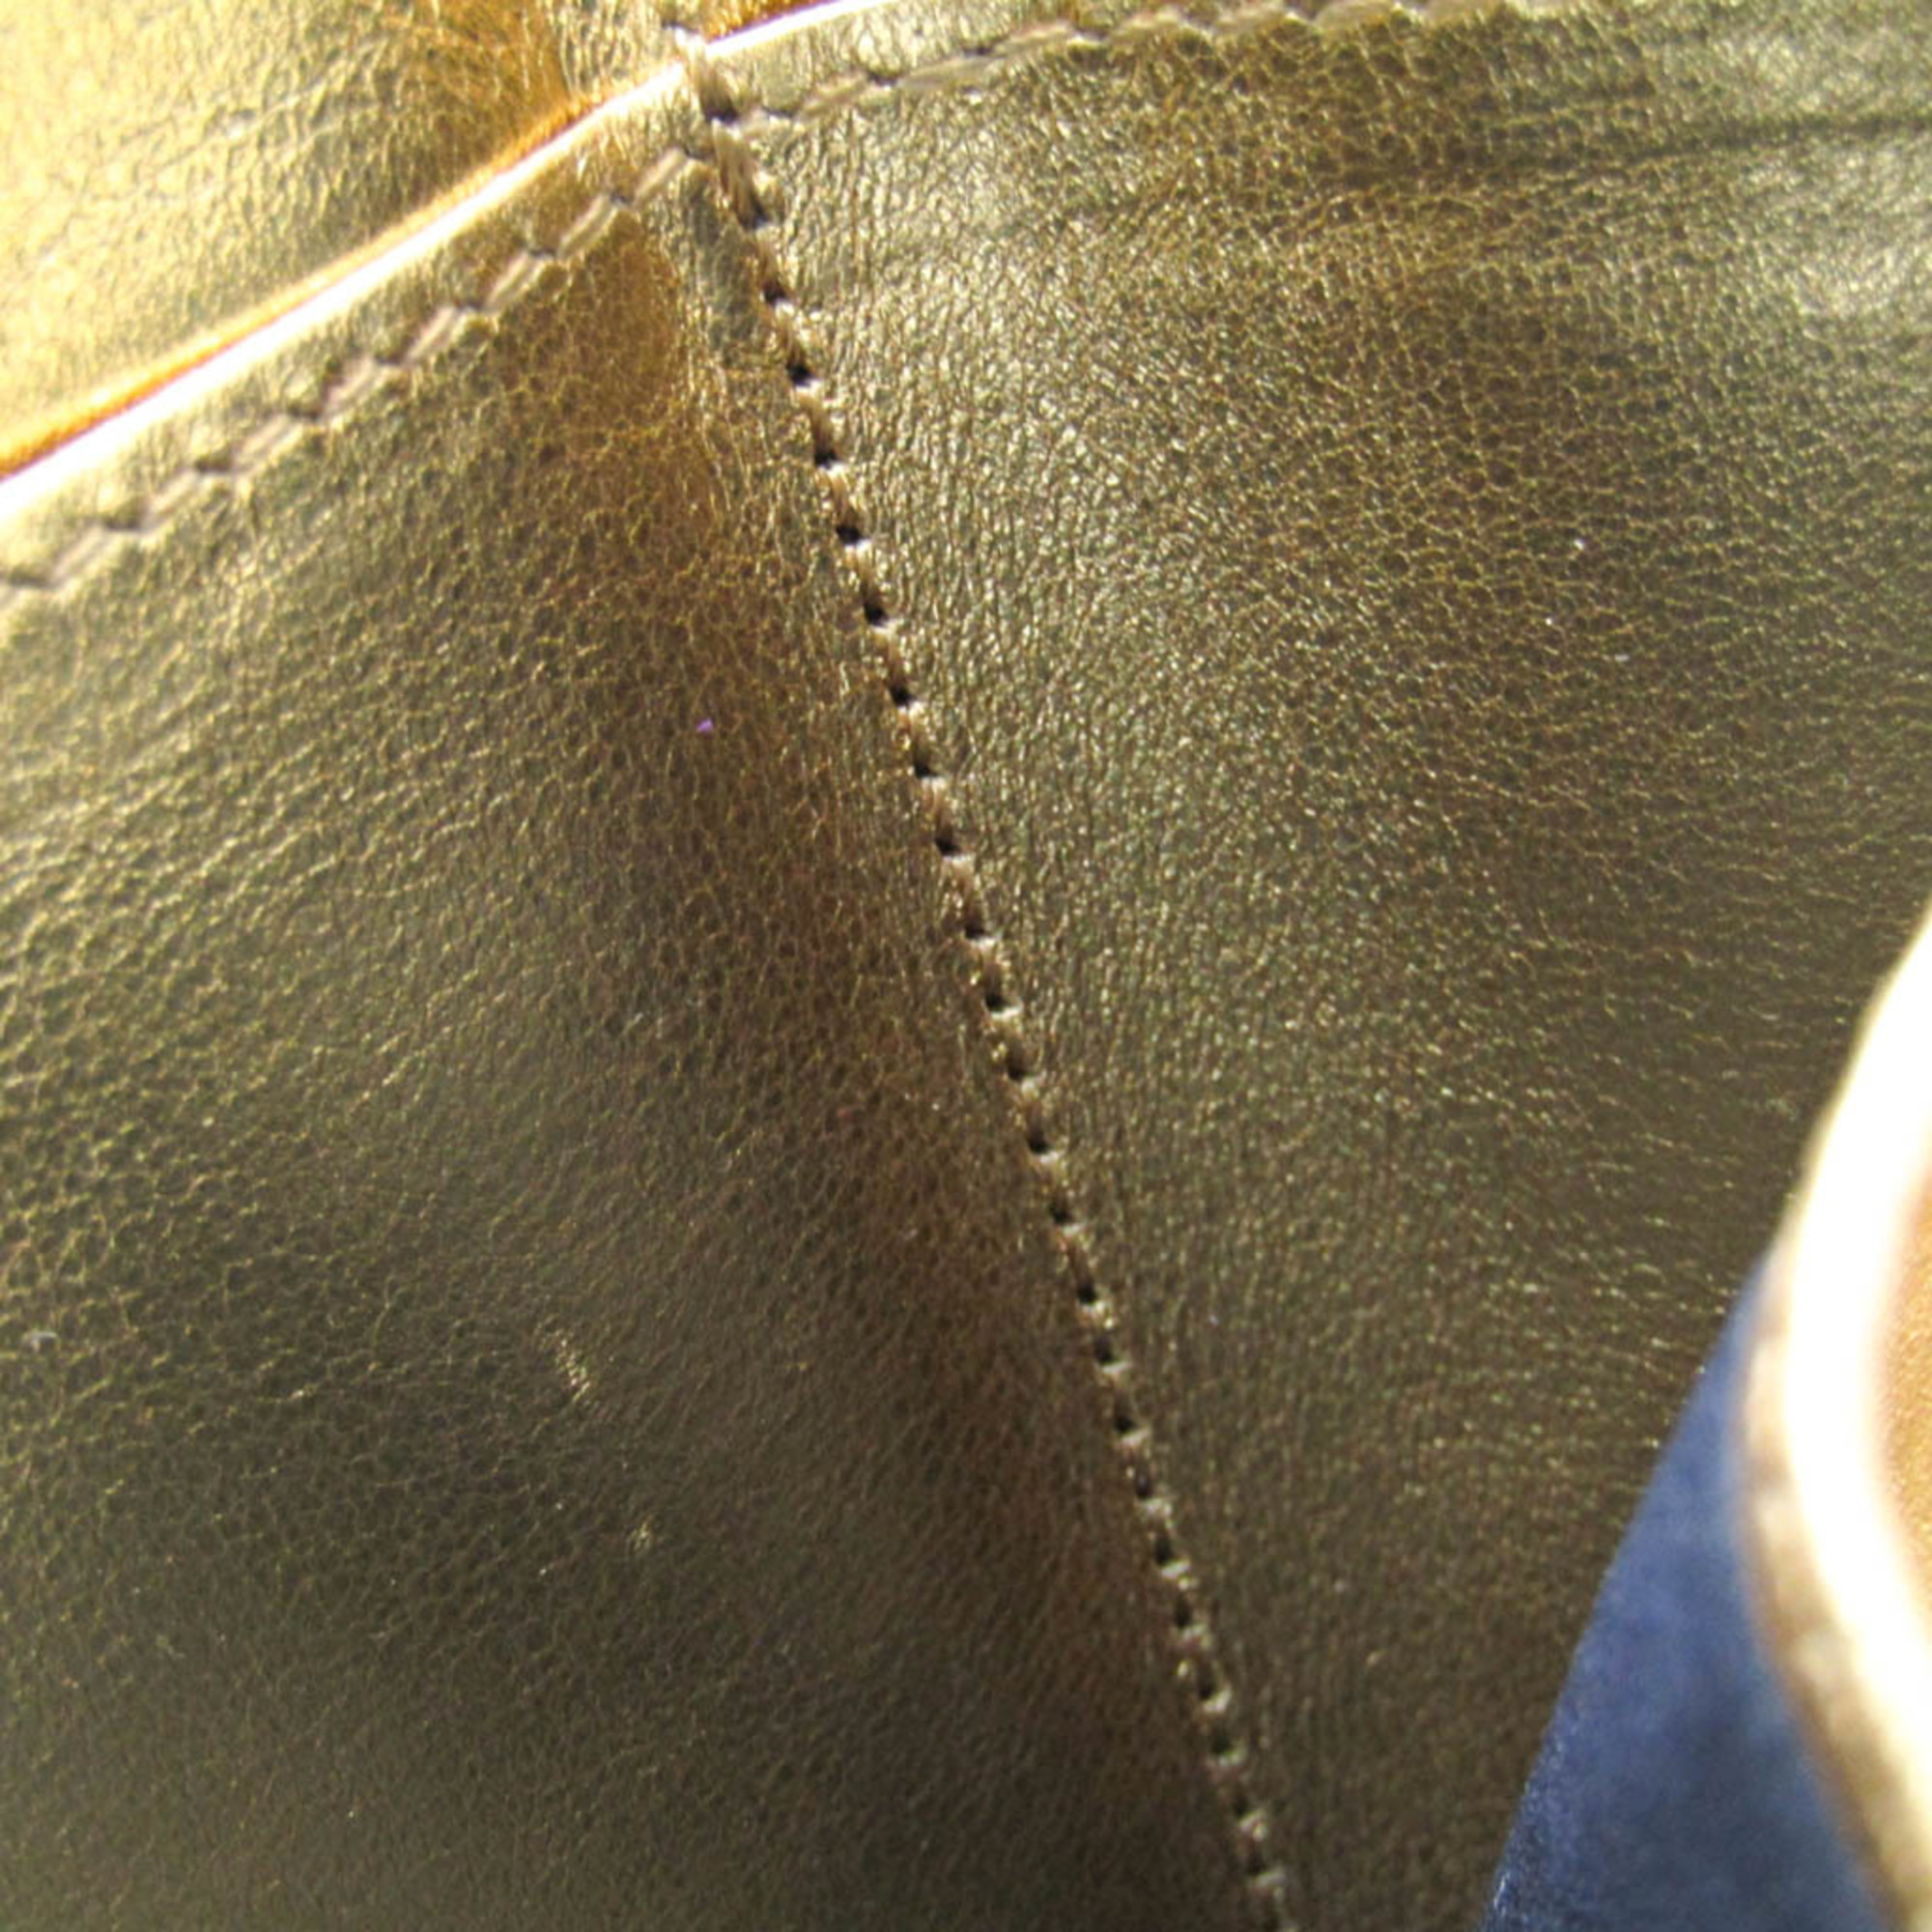 Fendi PEEKABOO 8M0426 Women's Leather Wallet (tri-fold) Gold,Light Pink